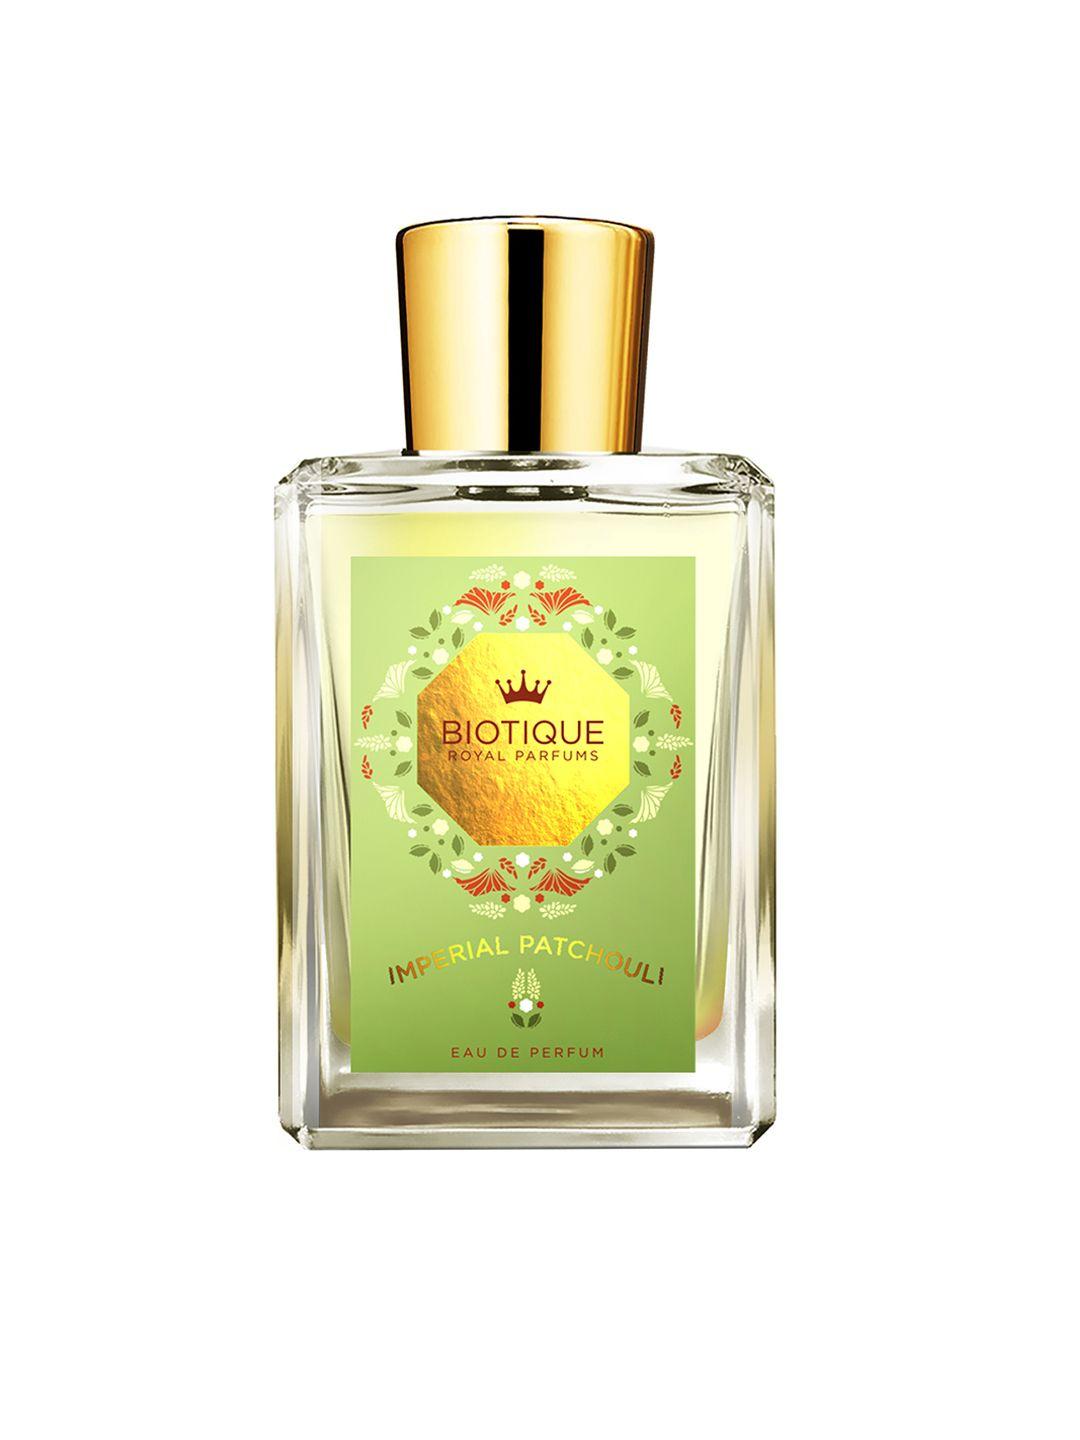 biotique unisex fragrance imperial patchouli eau de parfum 50ml